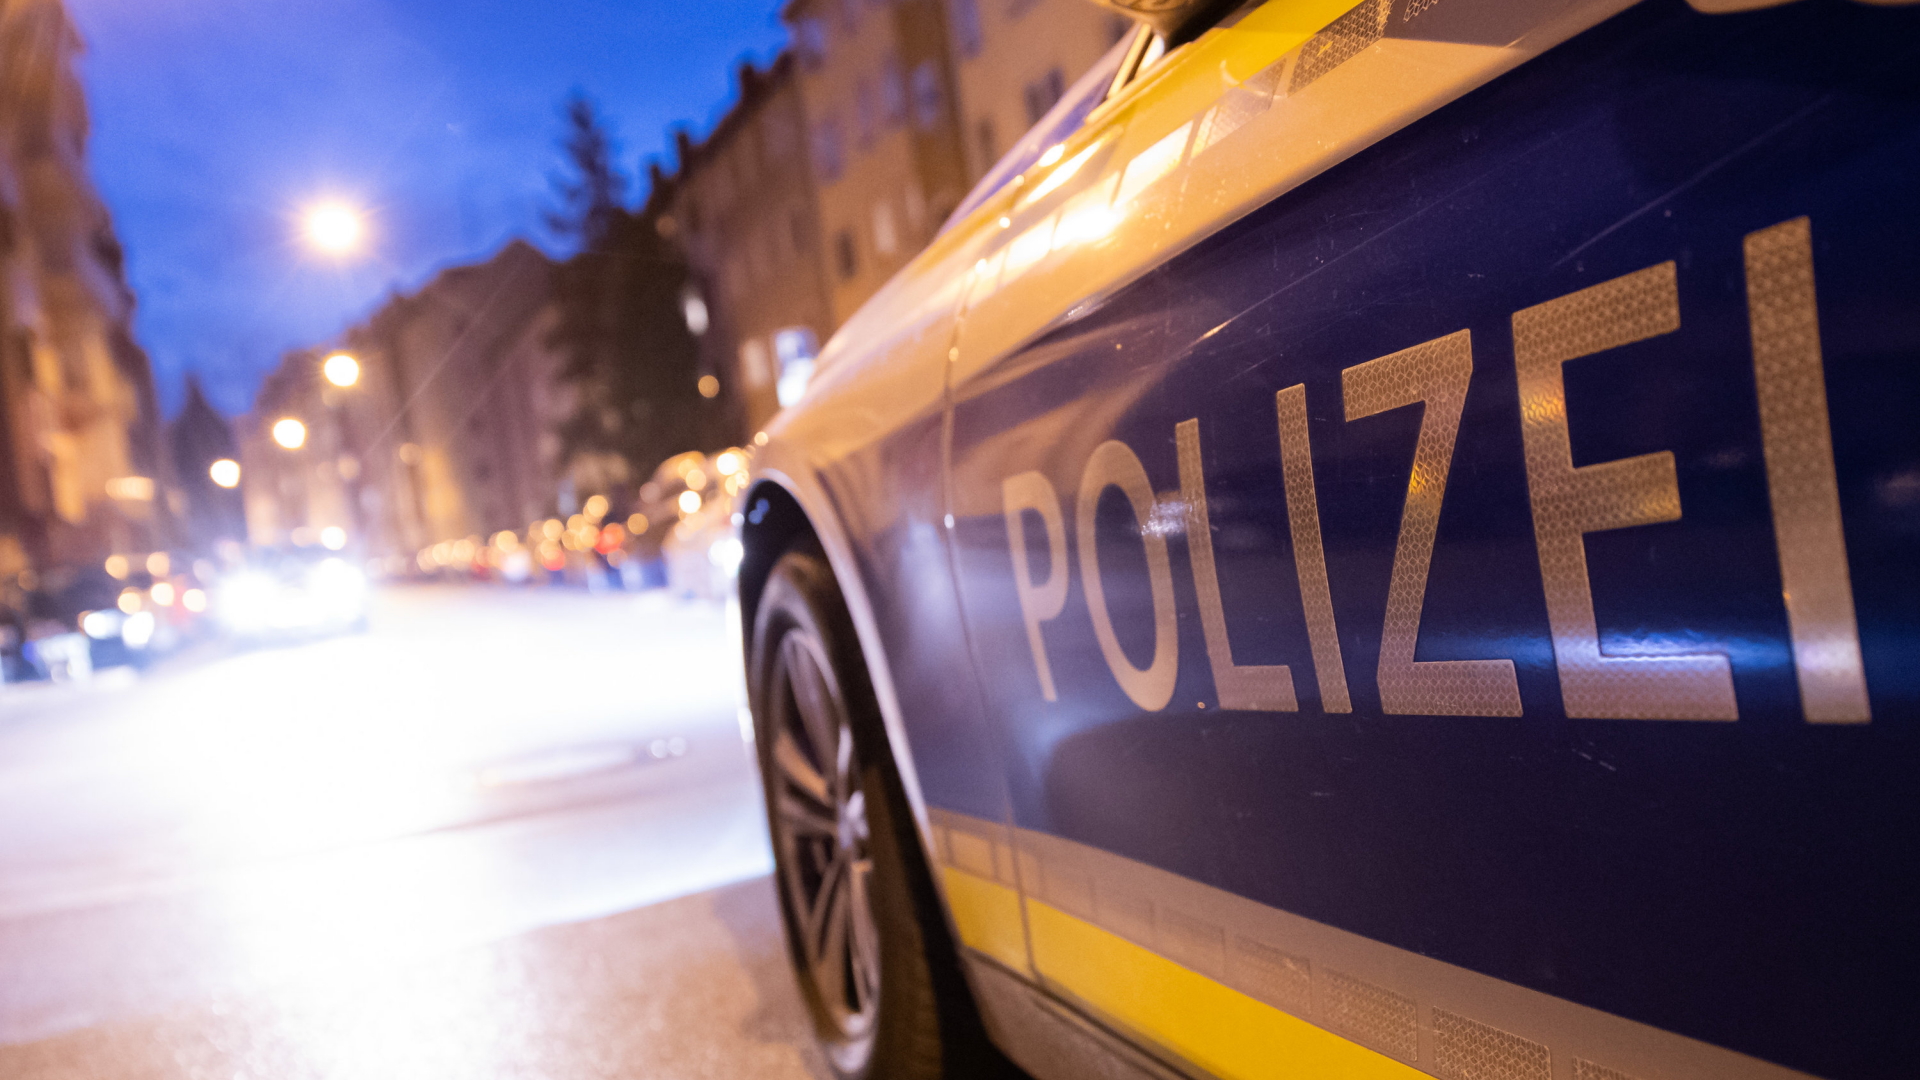 Polizeiwagen in Nürnberg | Bildquelle: dpa